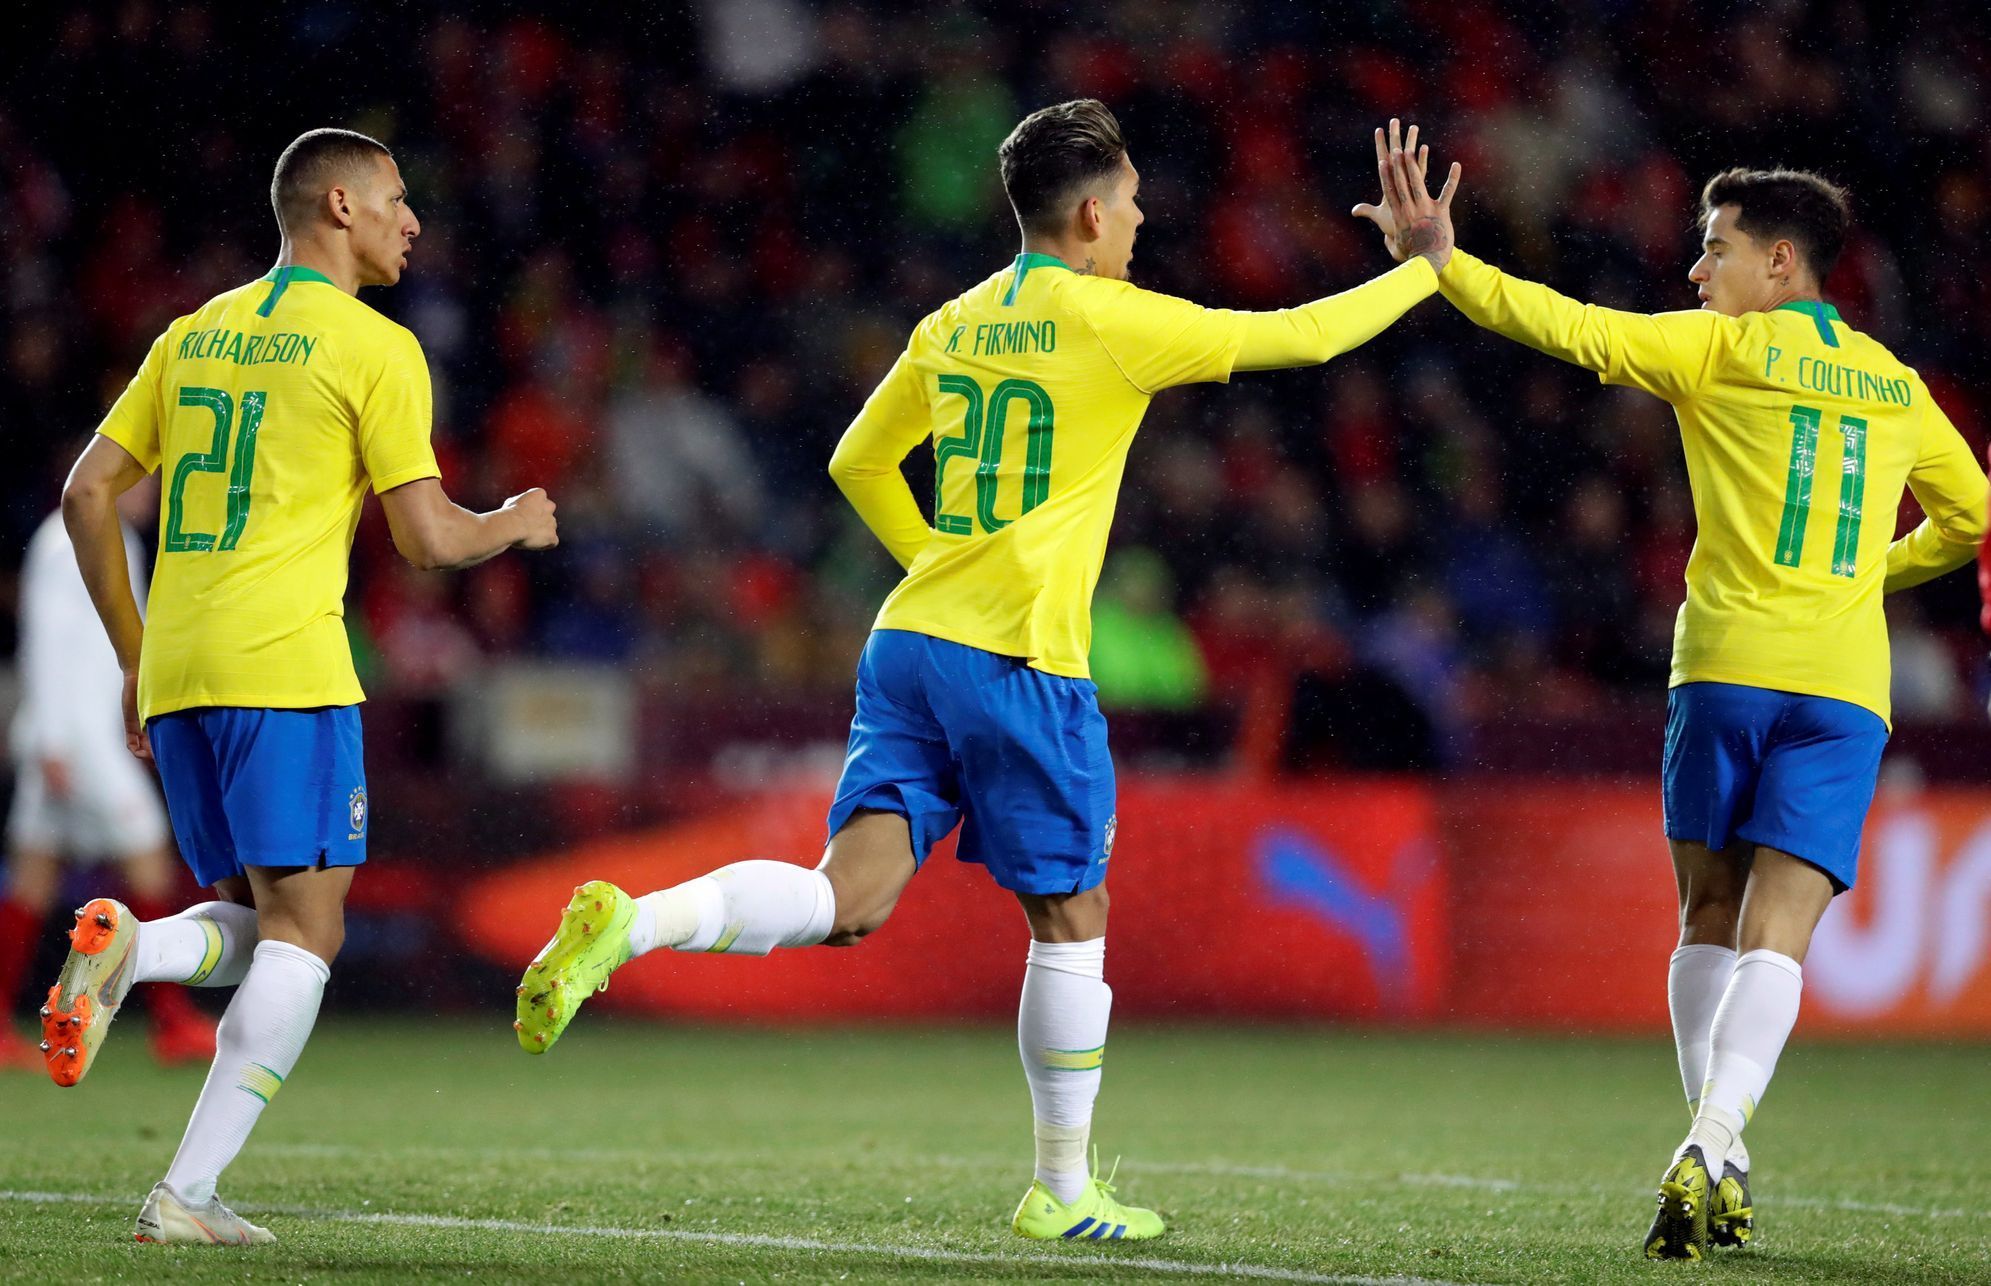 Brazilci slaví gól na 1:1 v přátelském zápase Česko - Brazílie.